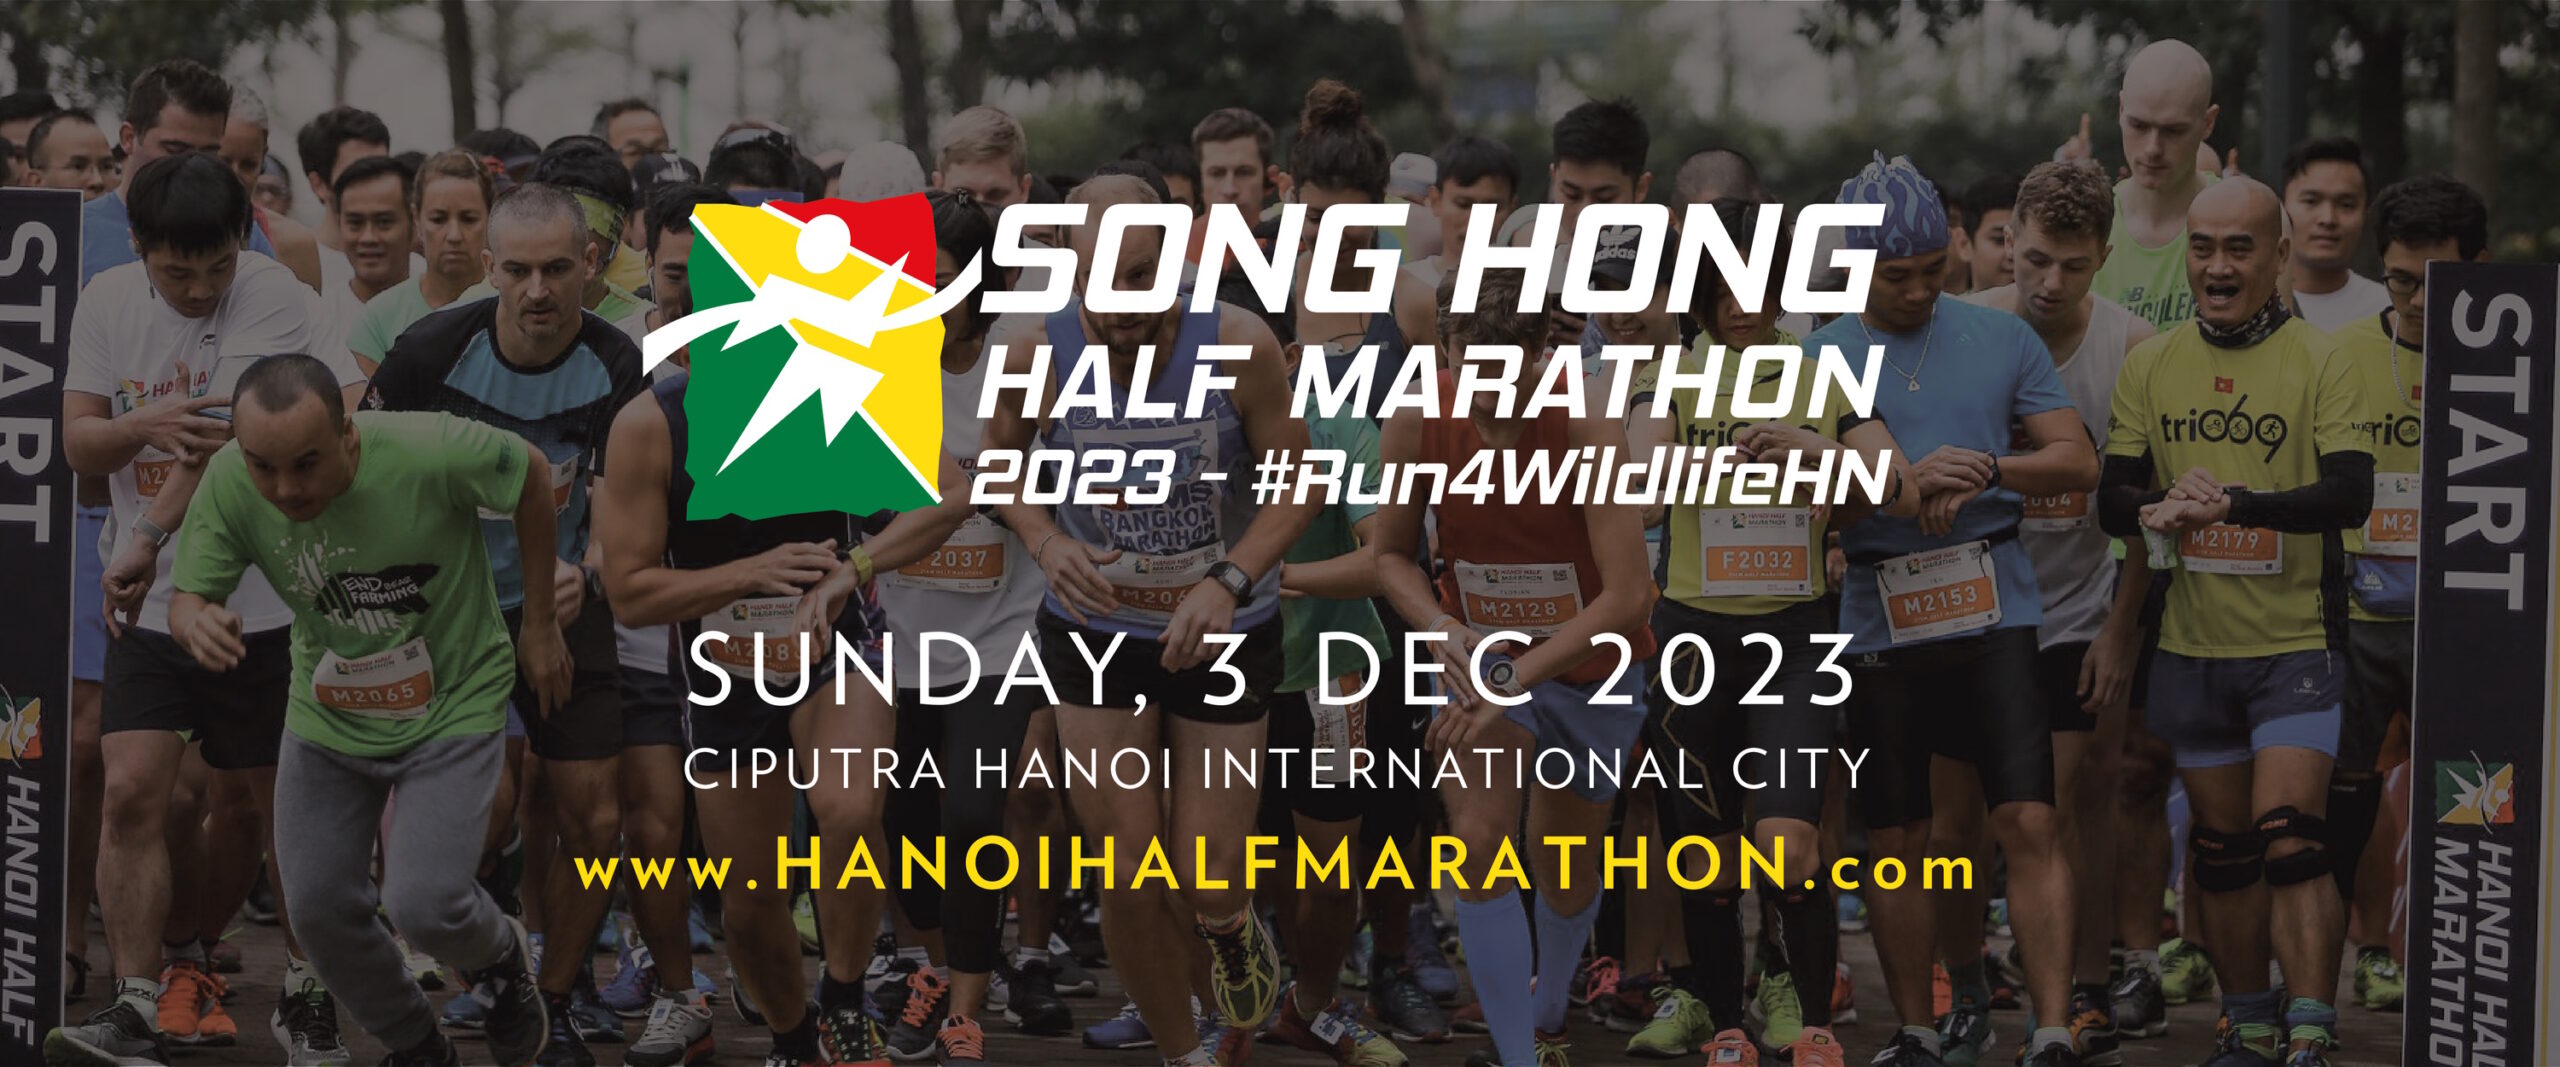 Song Hong Half Marathon 2023 - song hong half marathon 2023